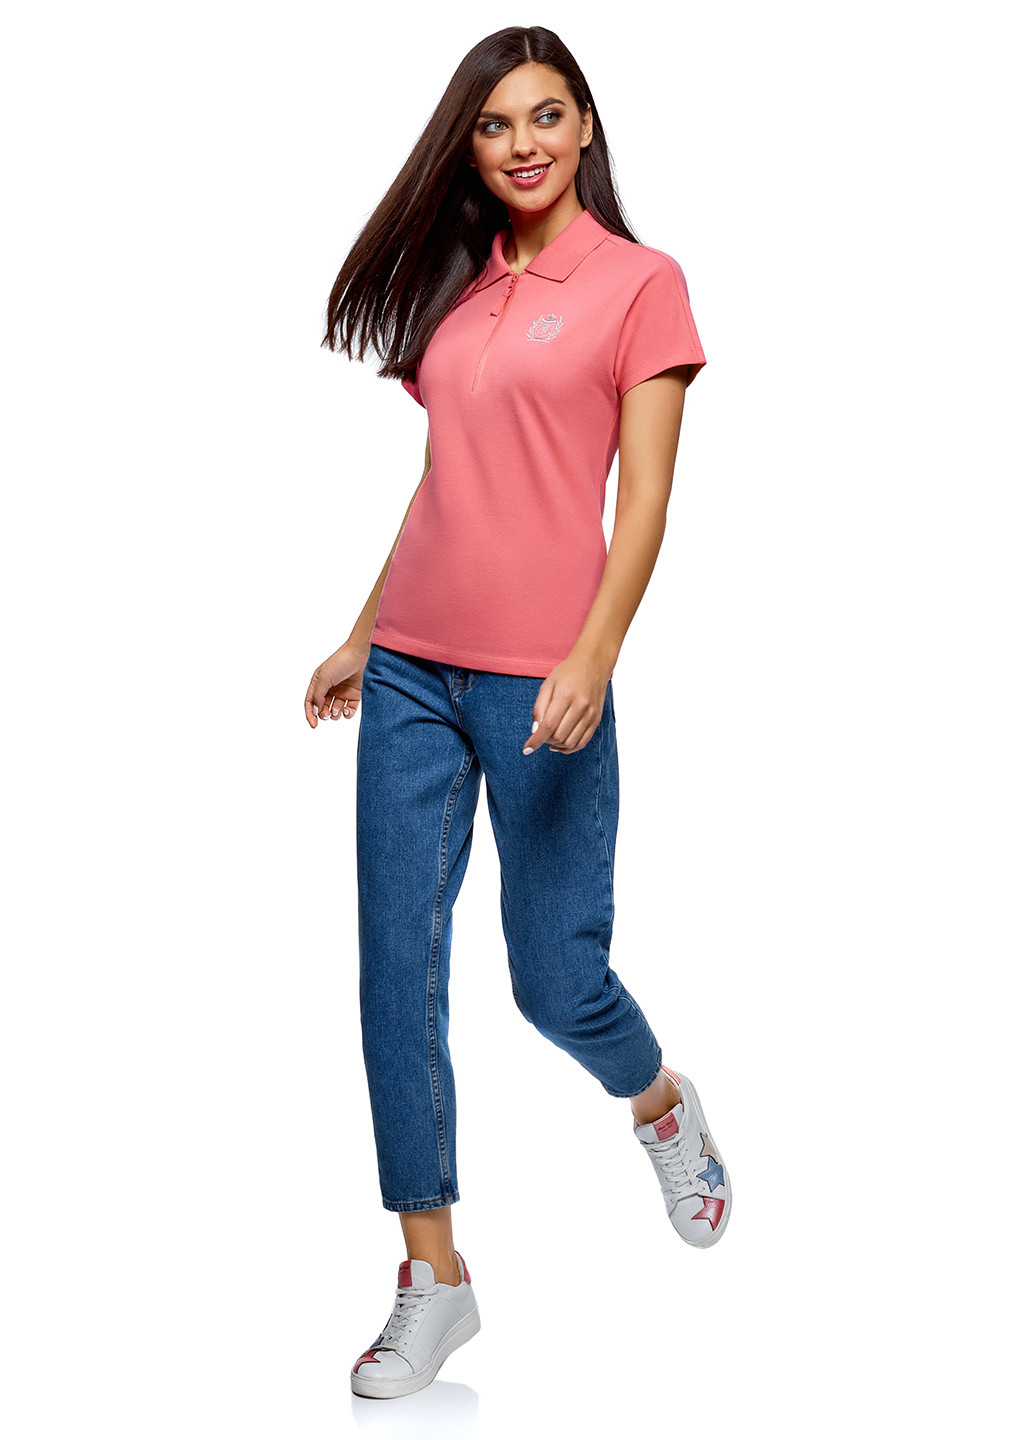 Светло-розовая женская футболка-поло Oodji однотонная